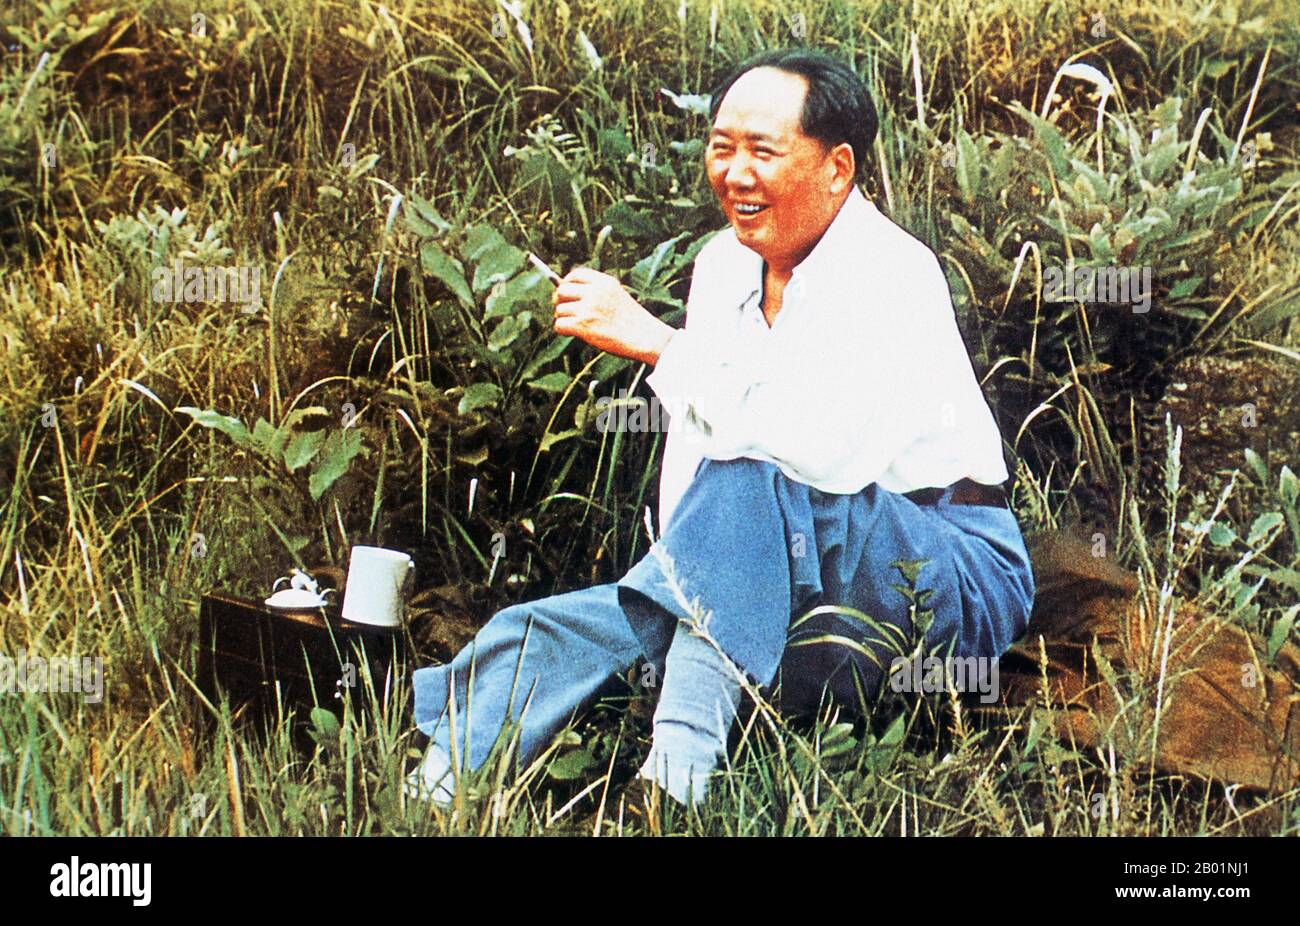 China: Mao Zedong (26. Dezember 1893 bis 9. September 1976), Vorsitzender der Volksrepublik China, 1954 in Hangzhou. Mao Zedong, auch als Mao TSE-tung transliteriert, war ein chinesischer kommunistischer Revolutionär, Guerilla-Stratege, Autor, politischer Theoretiker und Führer der chinesischen Revolution. Er wird allgemein als Vorsitzender Mao bezeichnet und war der Architekt der Volksrepublik China (VR China) von ihrer Gründung im Jahr 1949 und hatte bis zu seinem Tod im Jahr 1976 die autoritäre Kontrolle über die Nation. Stockfoto